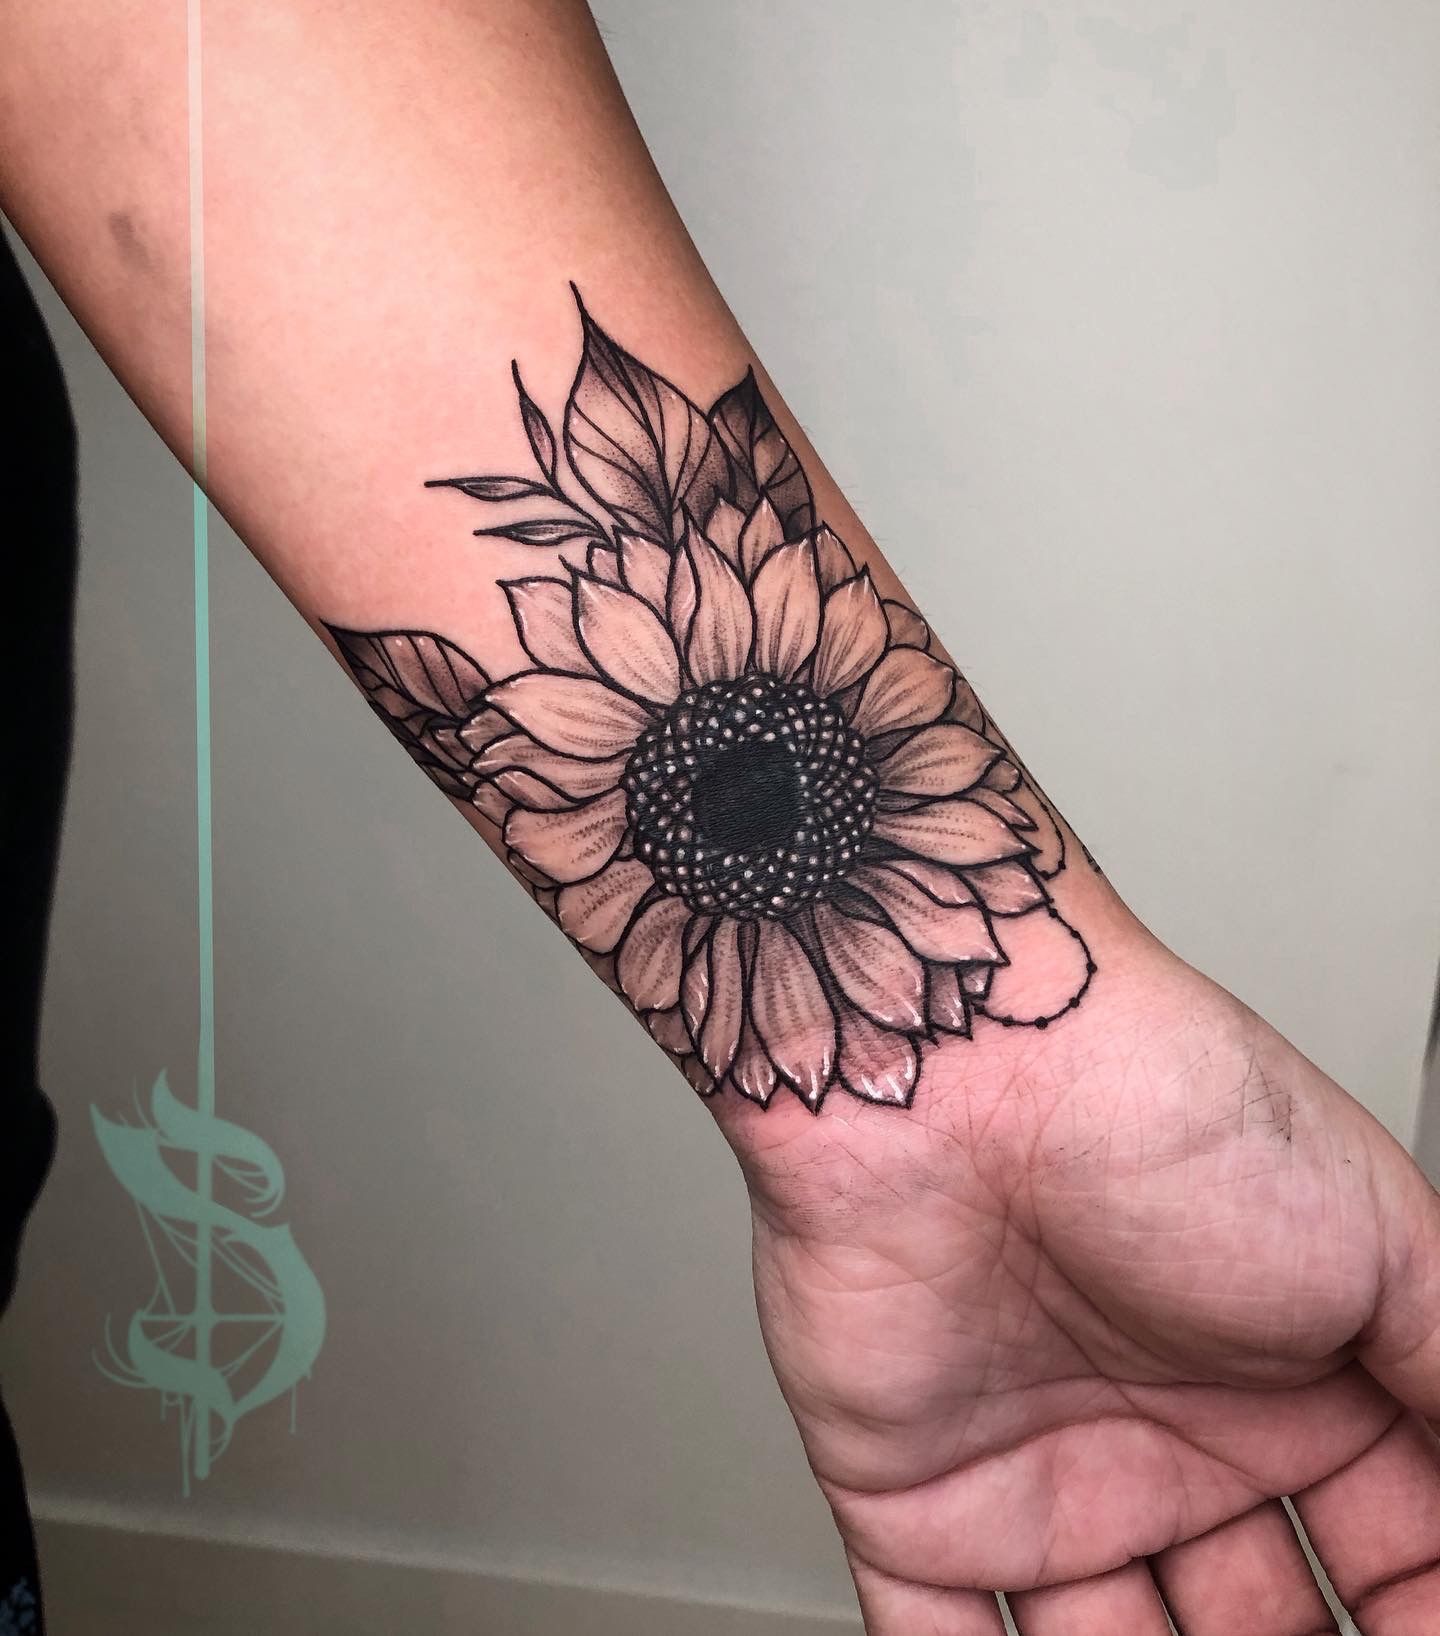 20 Sunflower Tattoos to Brighten Up Moms' Lives | CafeMom.com